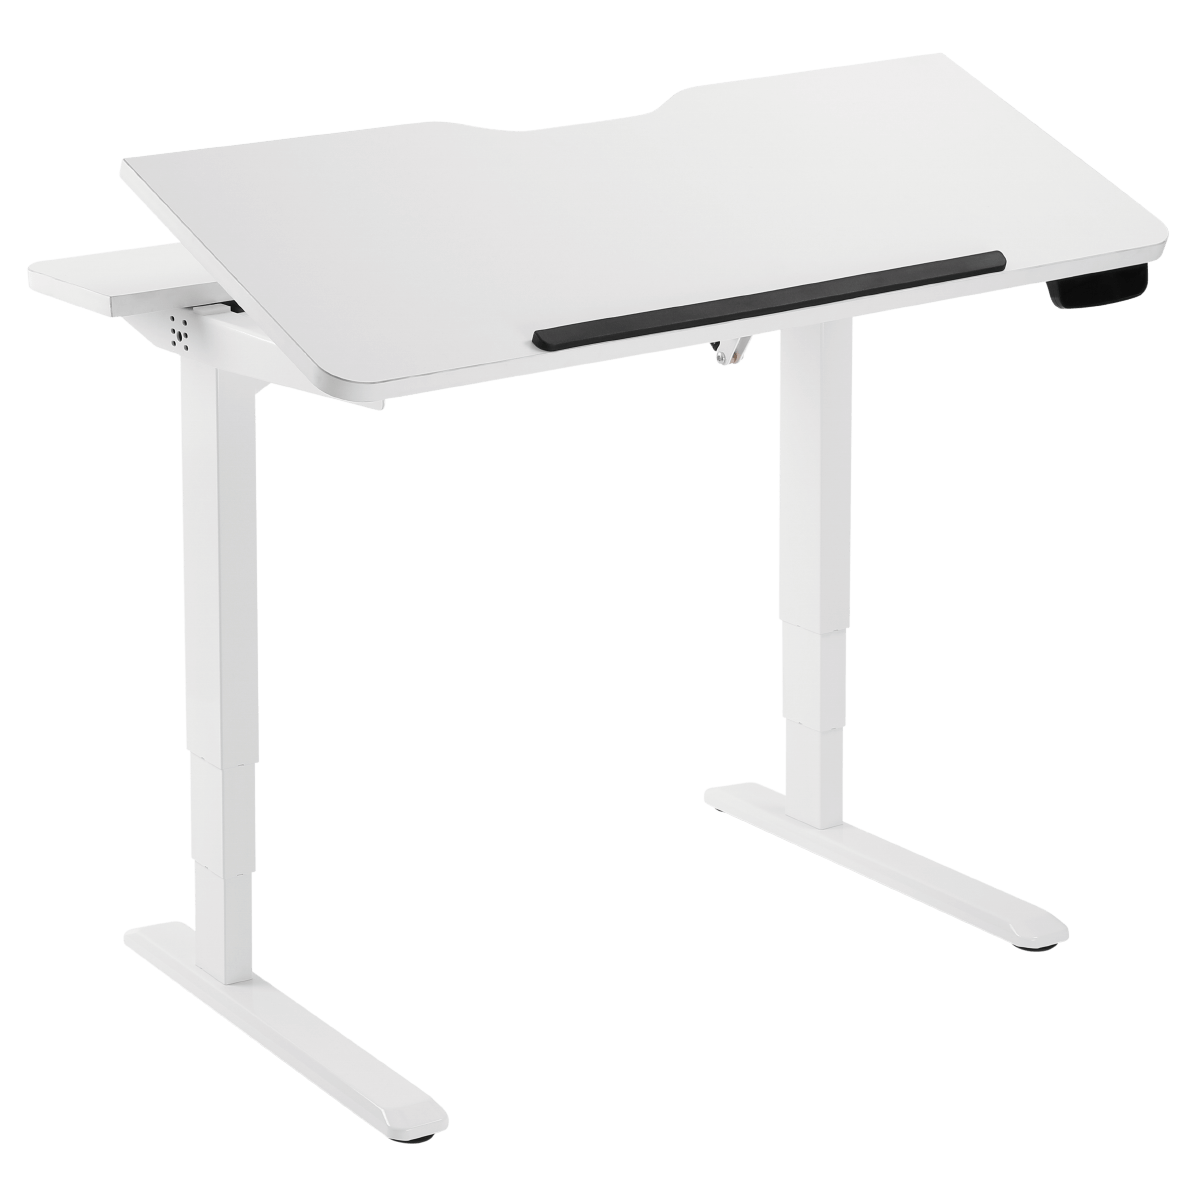 UVI Adjustable Desk